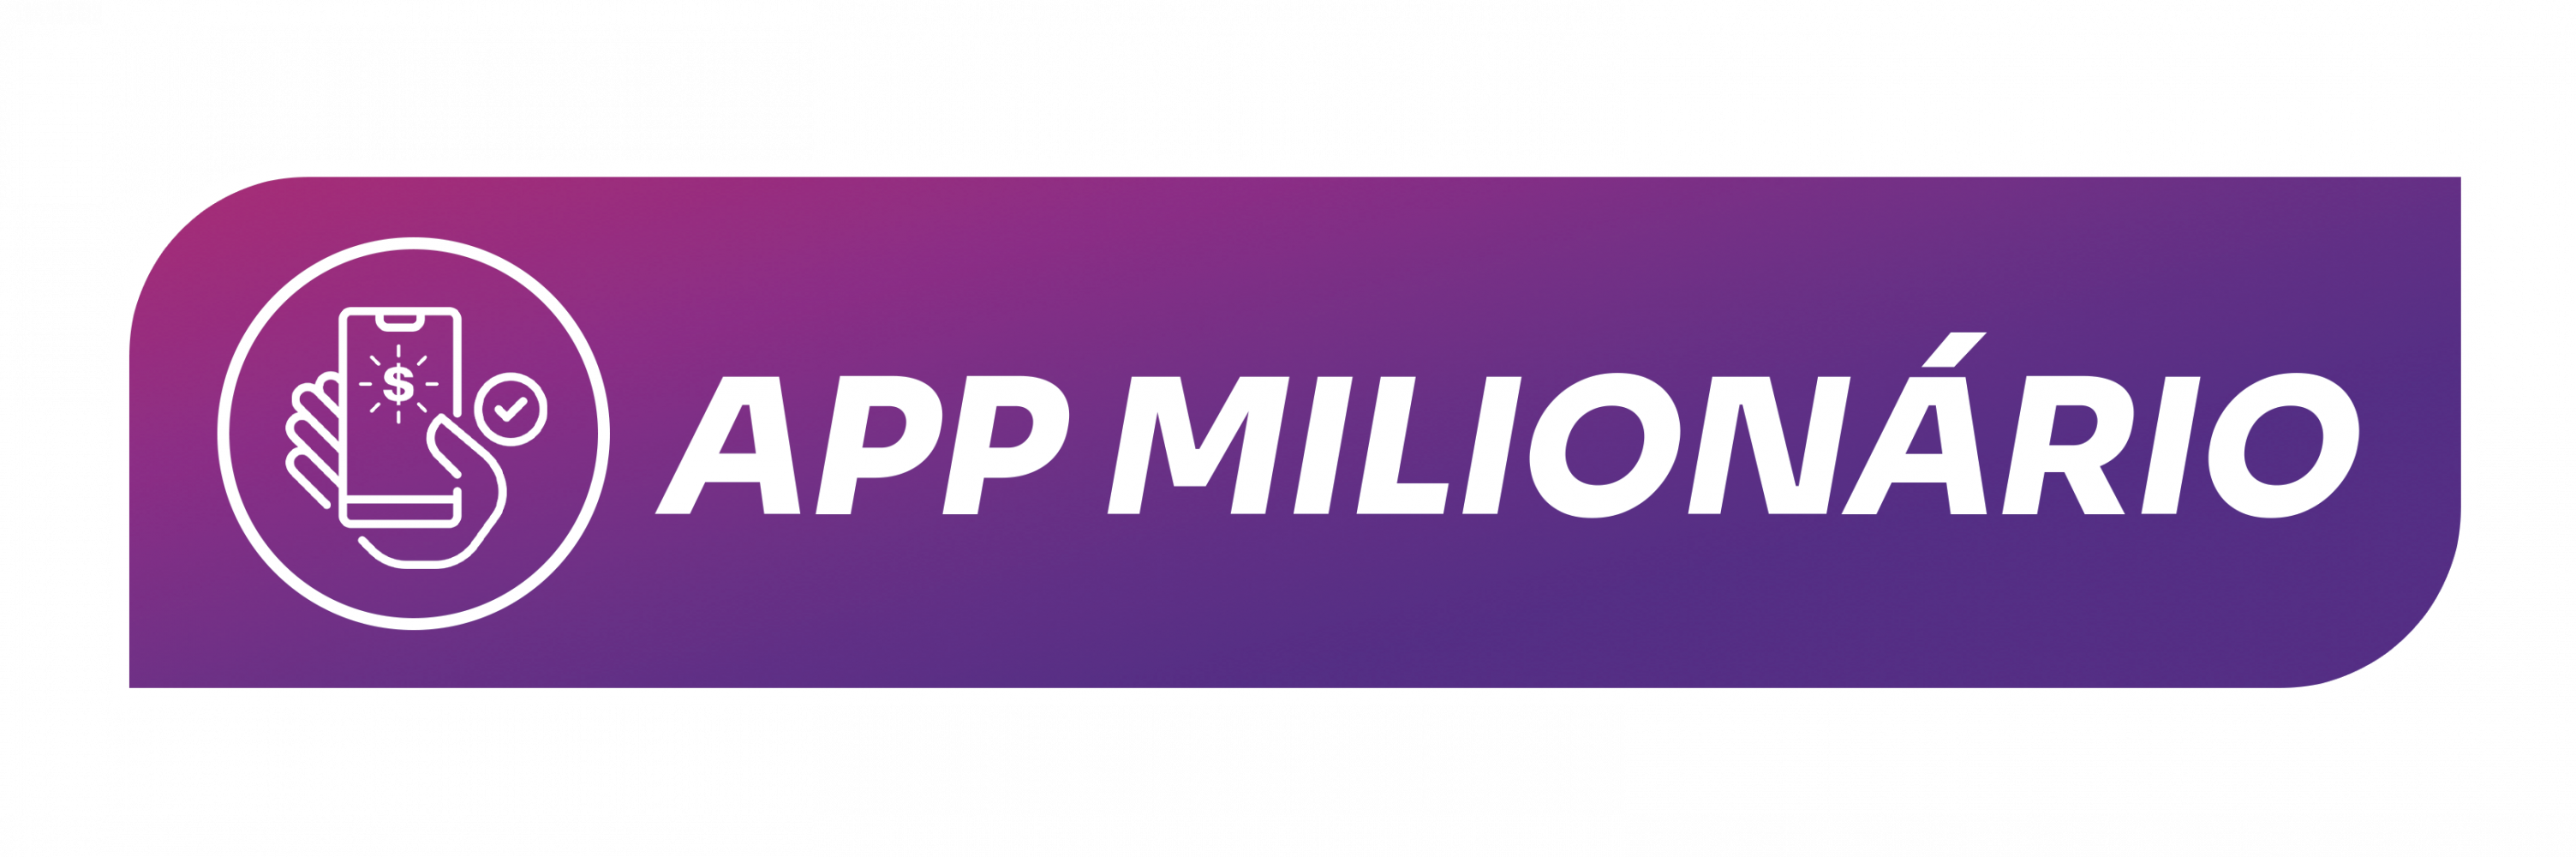 app-milionario-sticker2